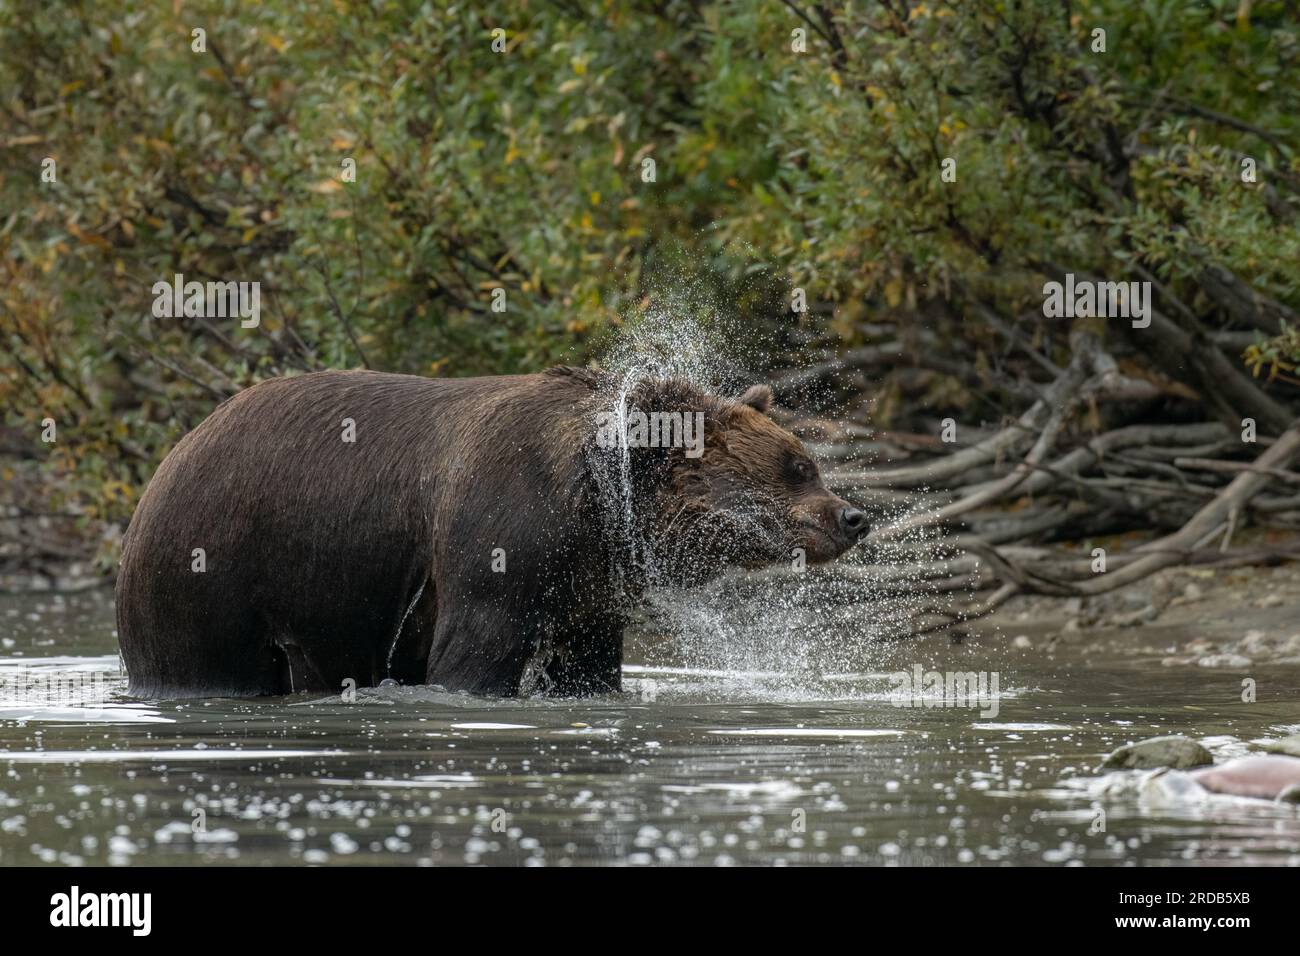 L'orso marrone che scuote la sua pelliccia bagnata. ALASKA; USA: Le fotografie MAGICHE hanno mostrato un orso grizzly a grandezza naturale che spruzza in un fiume. Nell'immagine, il gigan Foto Stock